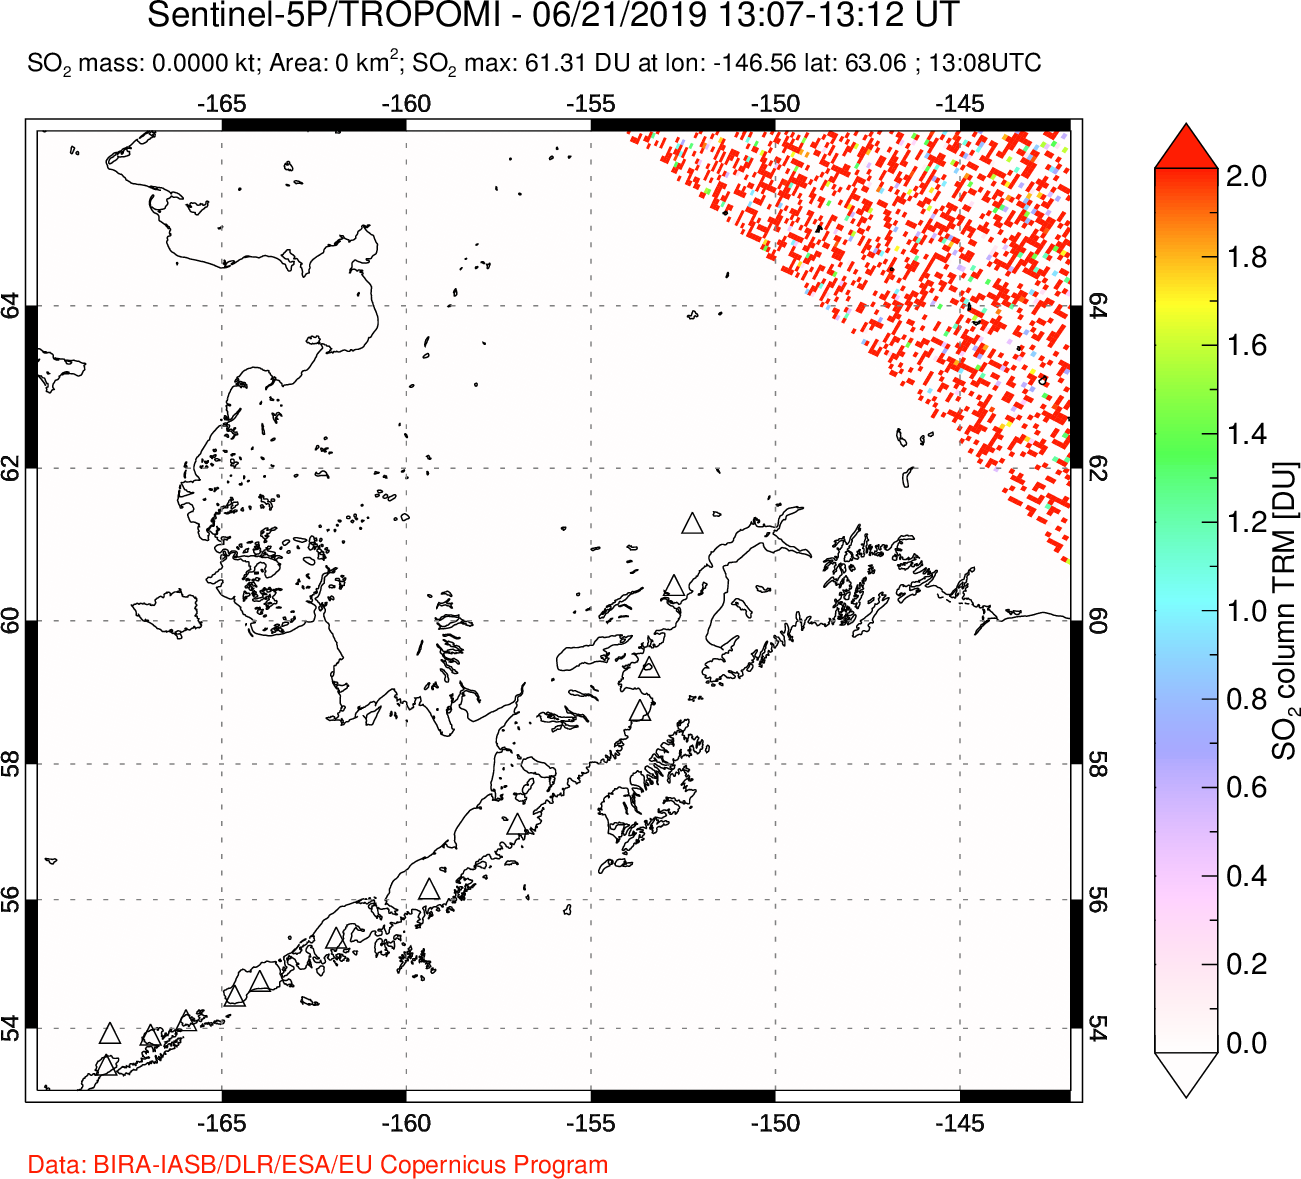 A sulfur dioxide image over Alaska, USA on Jun 21, 2019.